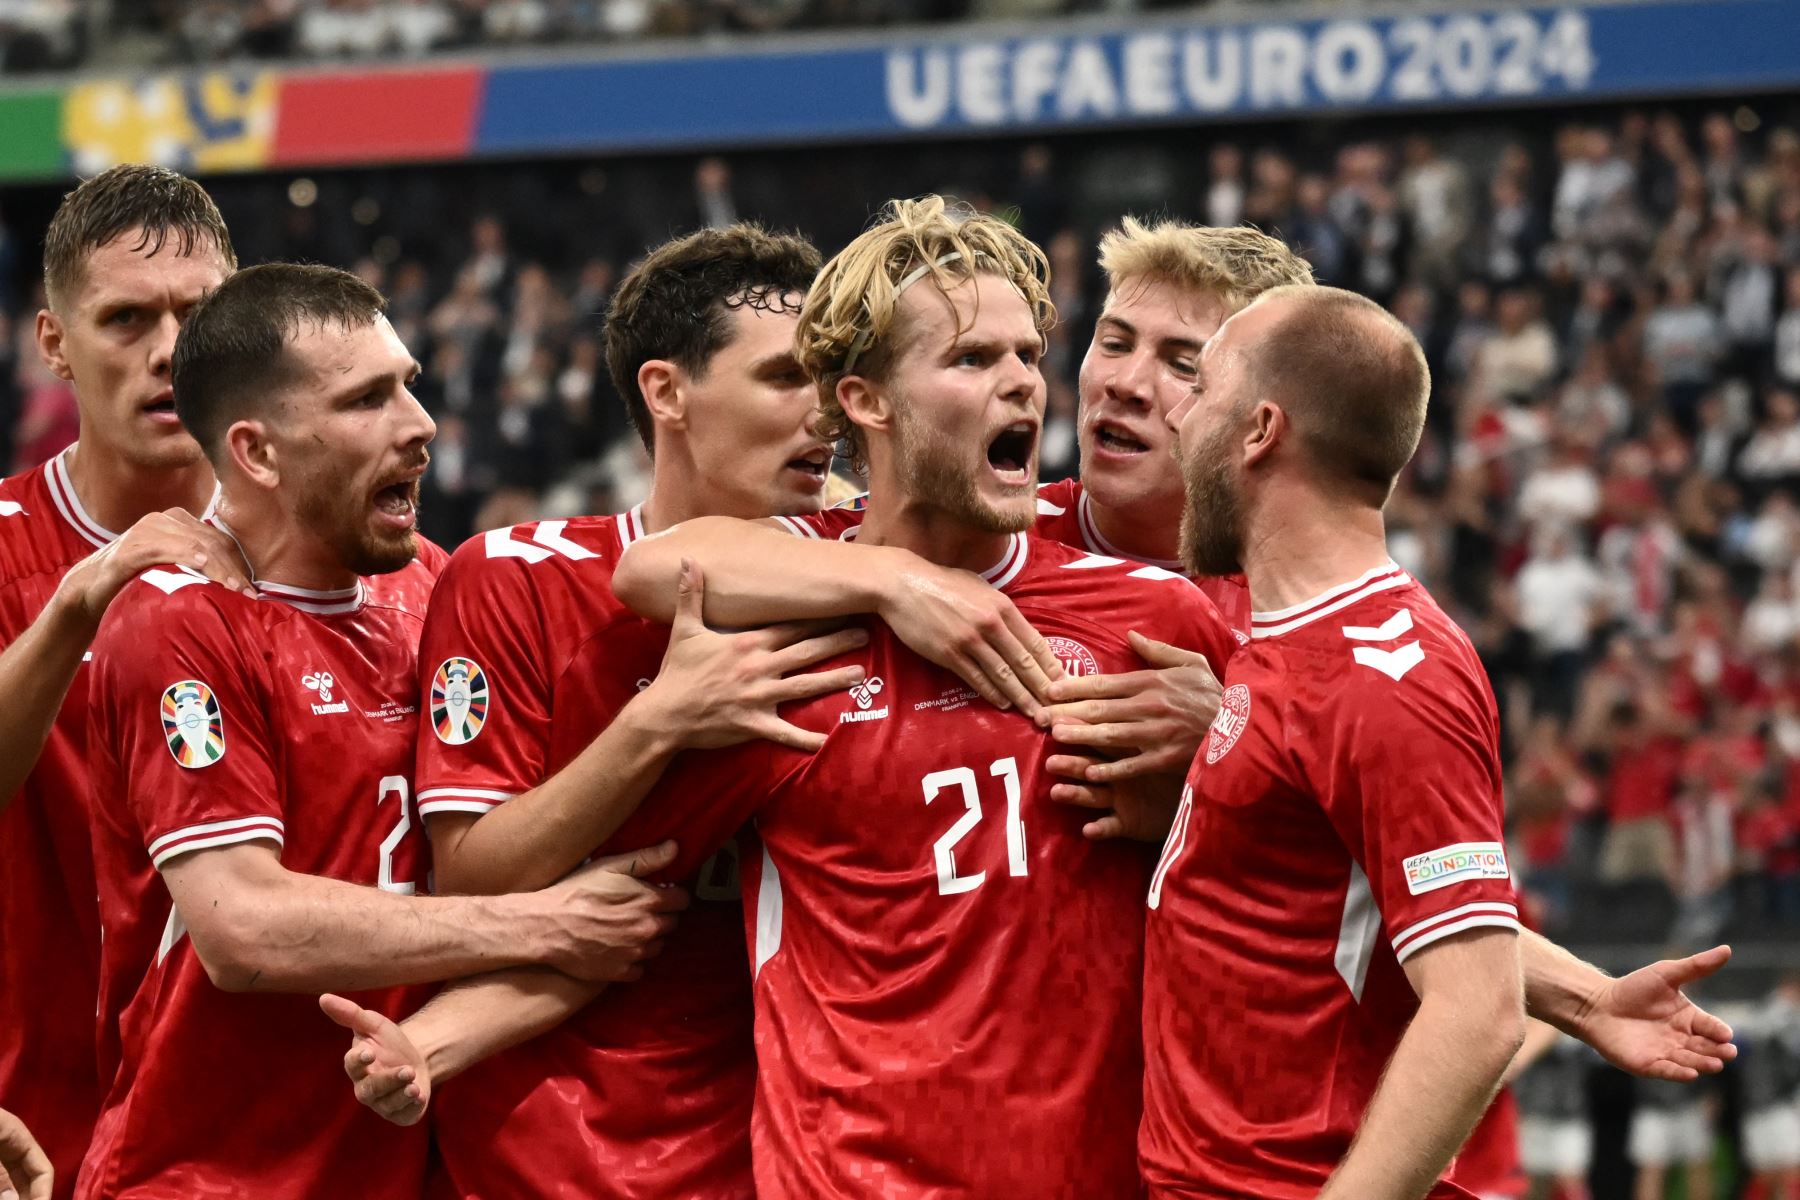 El mediocampista danés Morten Hjulmand celebra el primer gol de su equipo durante el partido de fútbol del Grupo C de la UEFA Euro 2024 entre Dinamarca e Inglaterra en el Frankfurt Arena de Frankfurt, Alemania, el 20 de junio de 2024. Foto: AFP